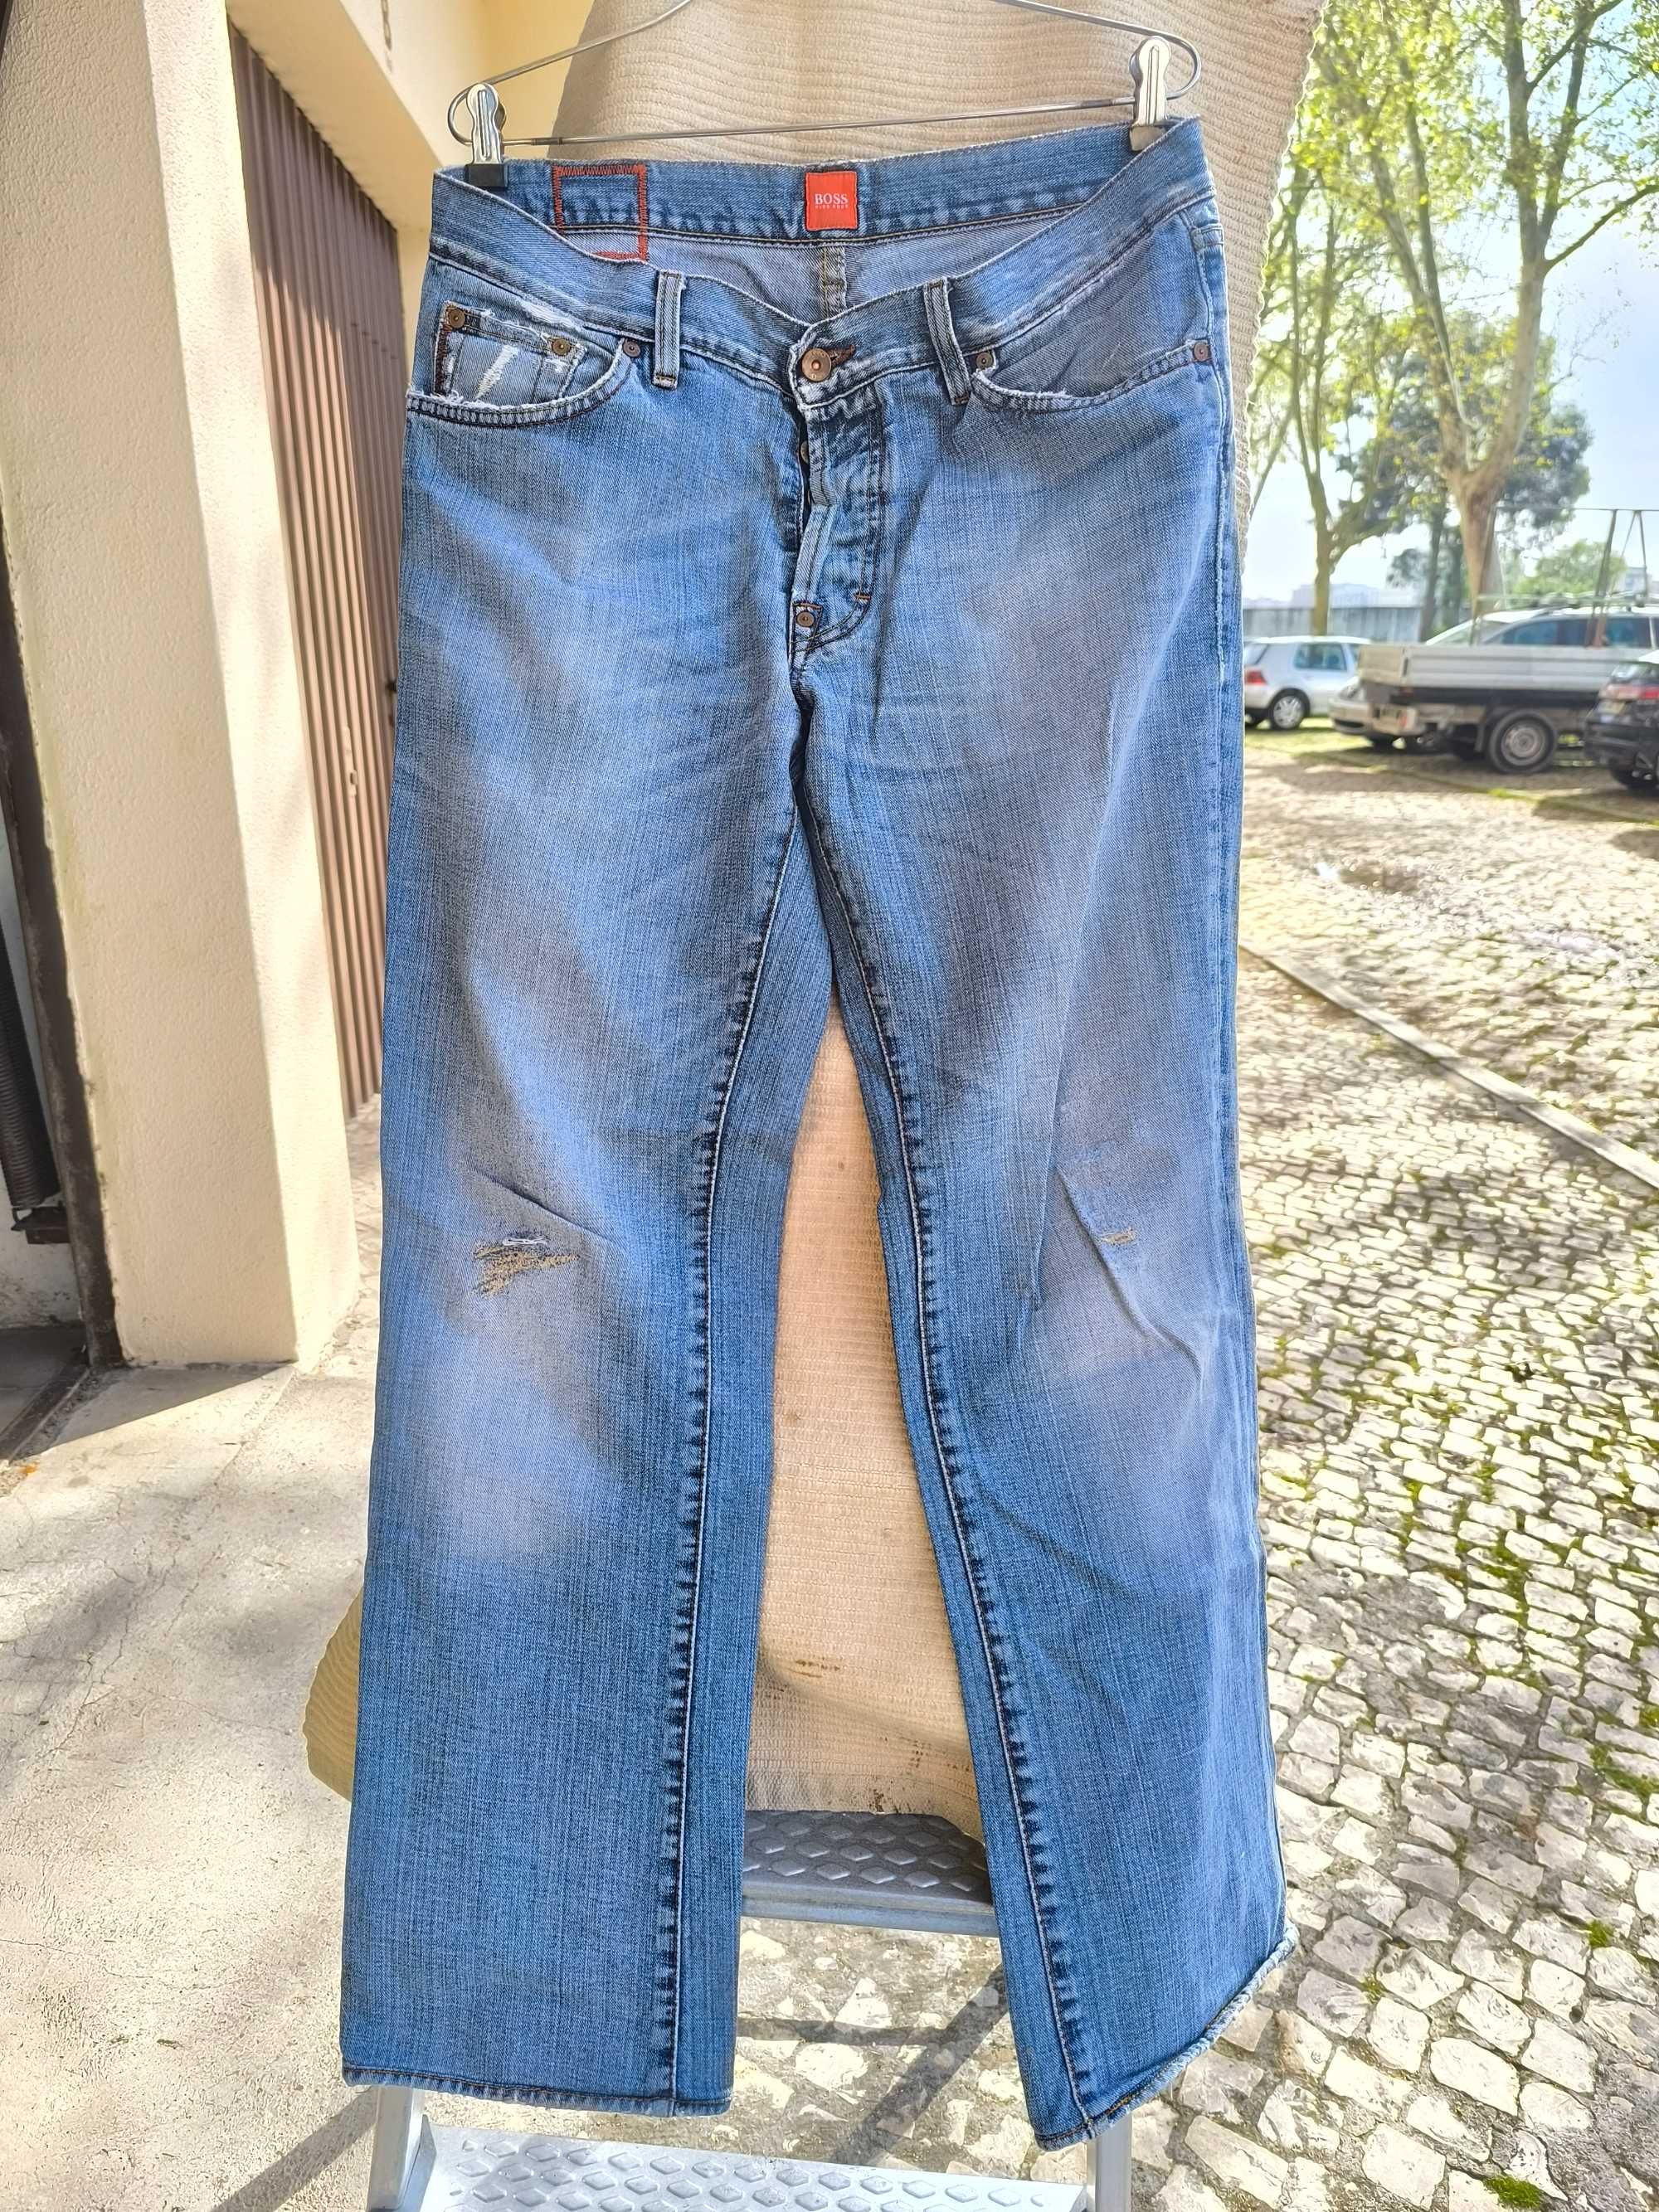 Jeans 34, Hugo Boss. Em excelente estado.
Vintage